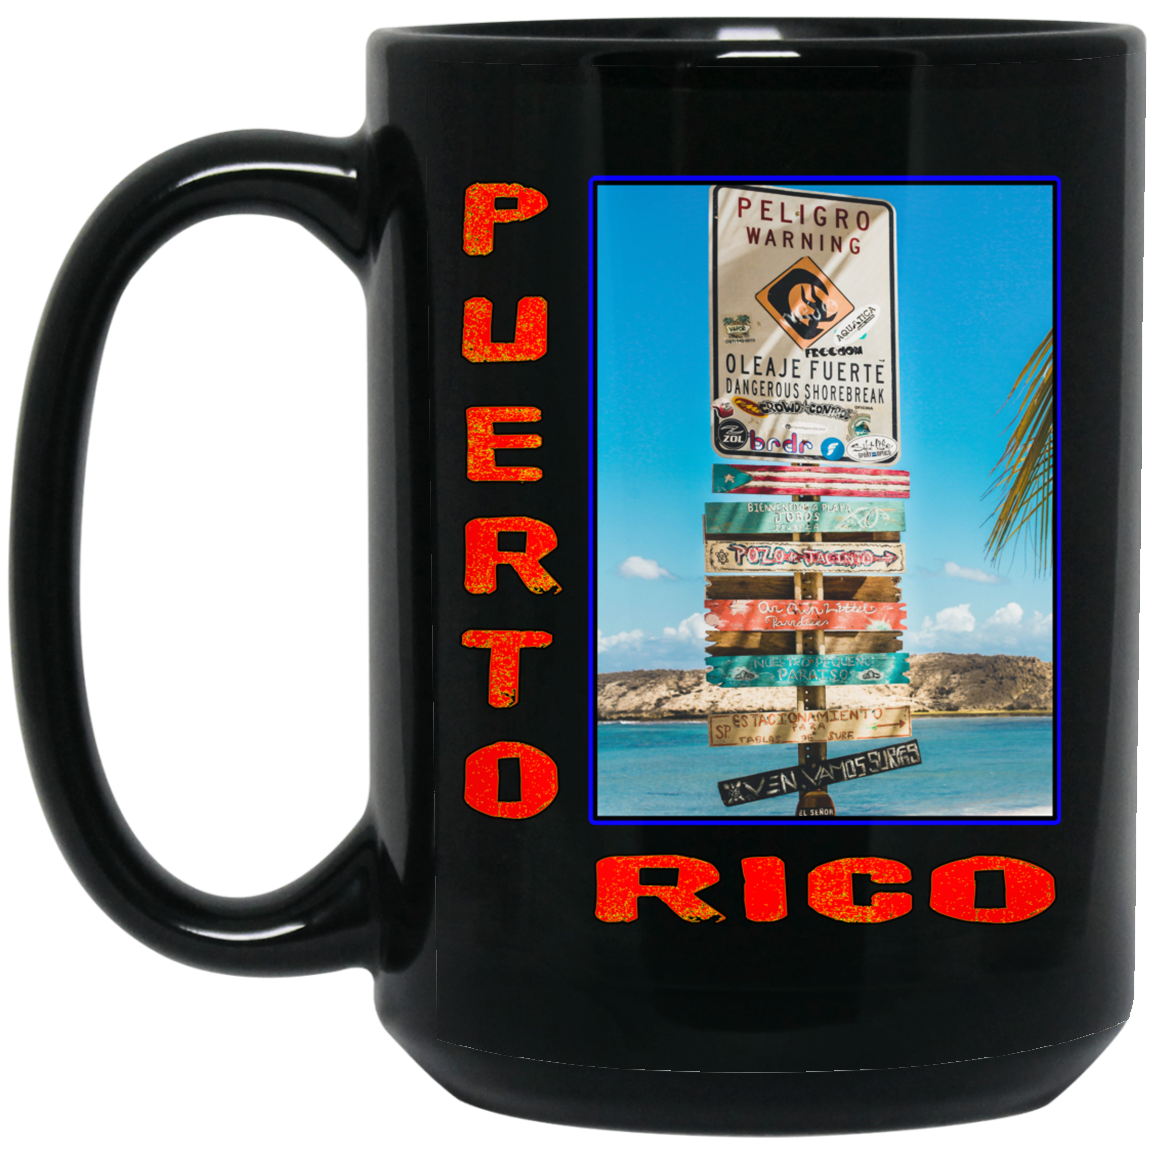 PR Signs 15 oz. Black Mug - Puerto Rican Pride